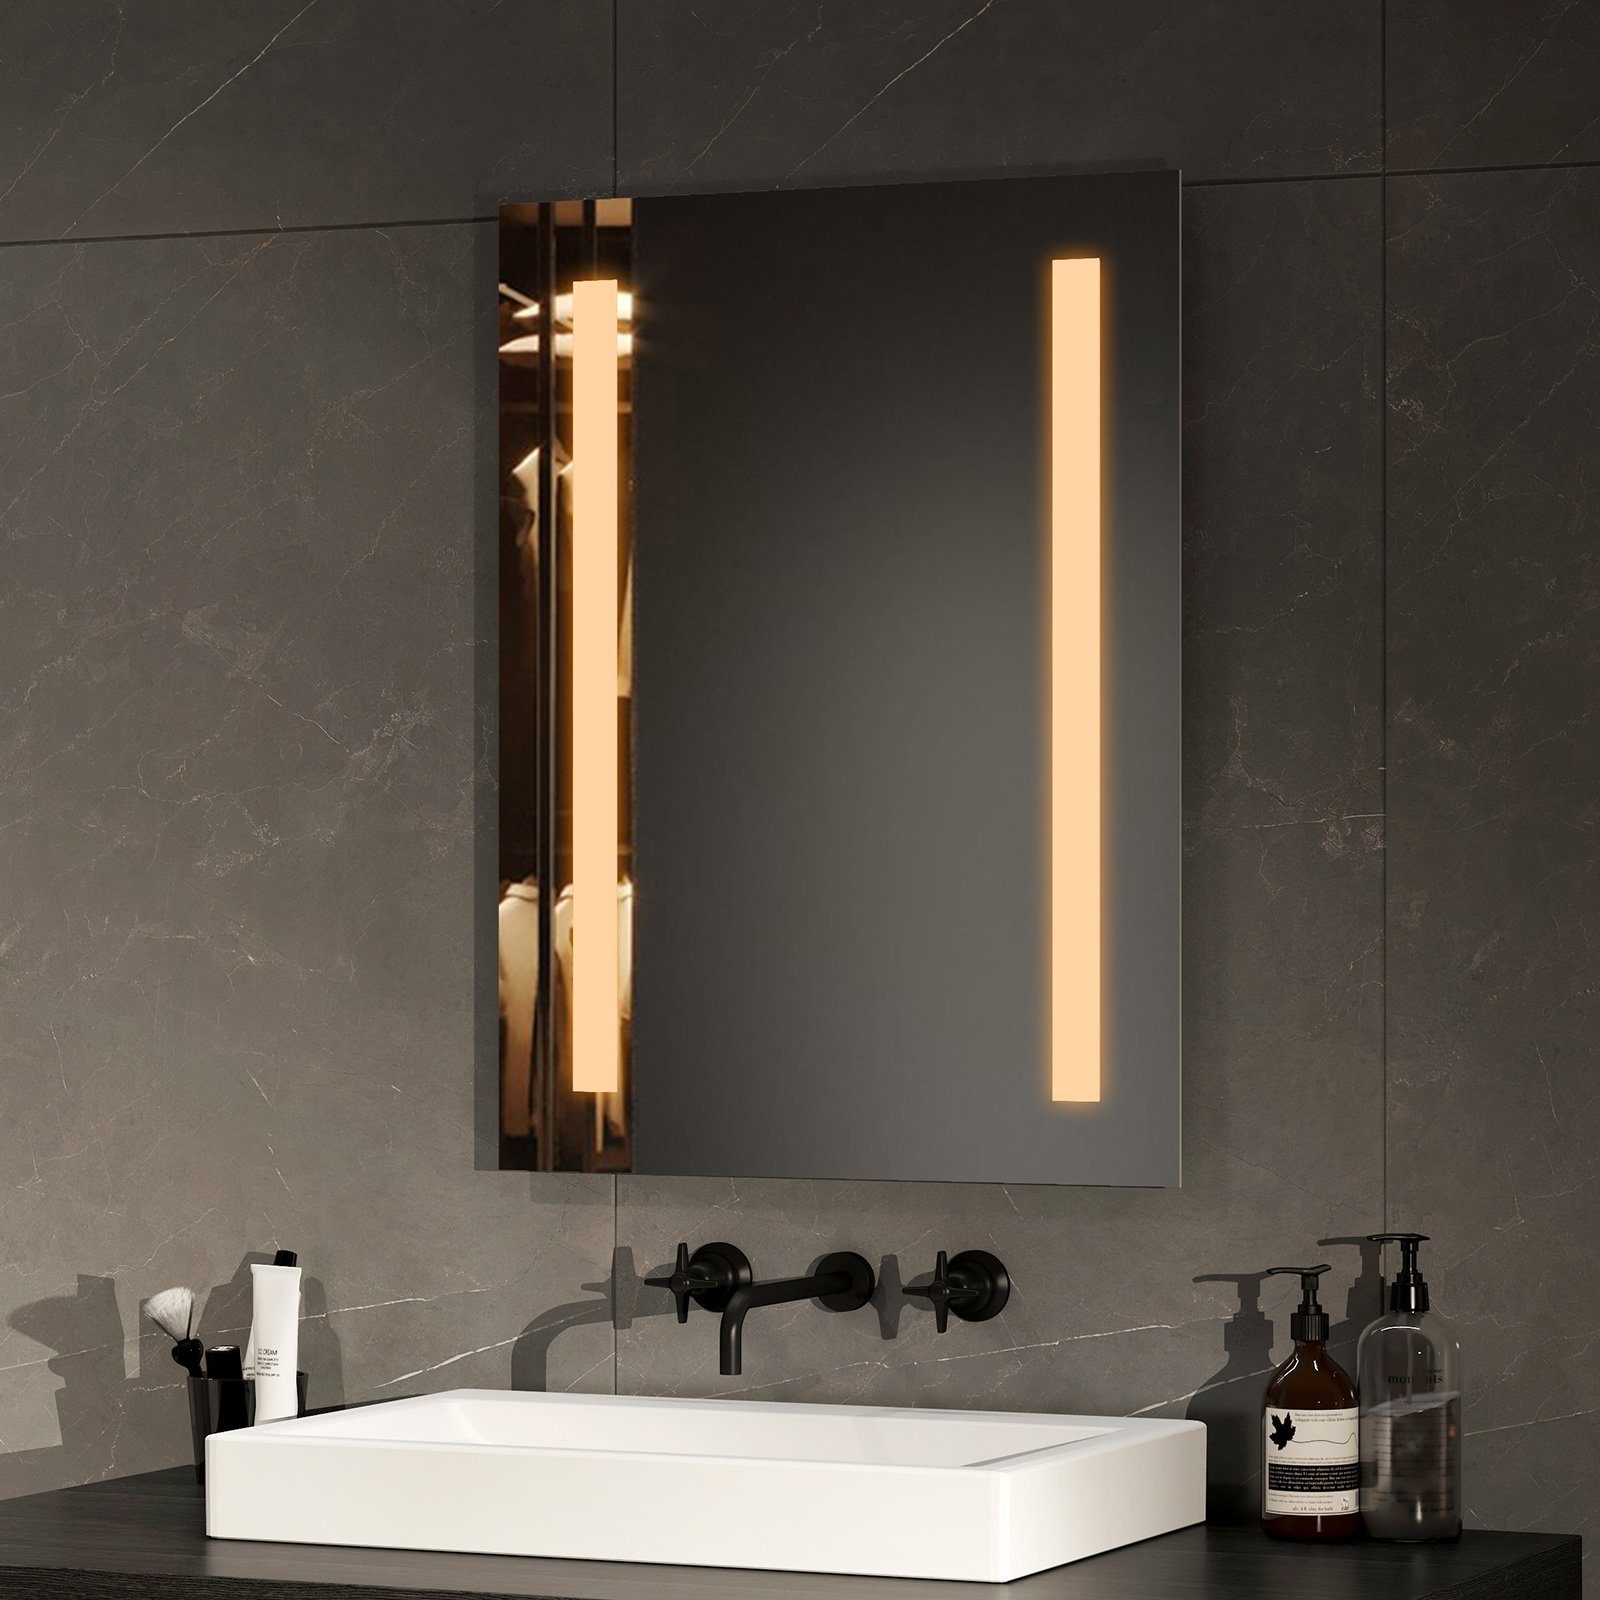 EMKE Badspiegel LED Badspiegel Wandspiegel mit Beleuchtung